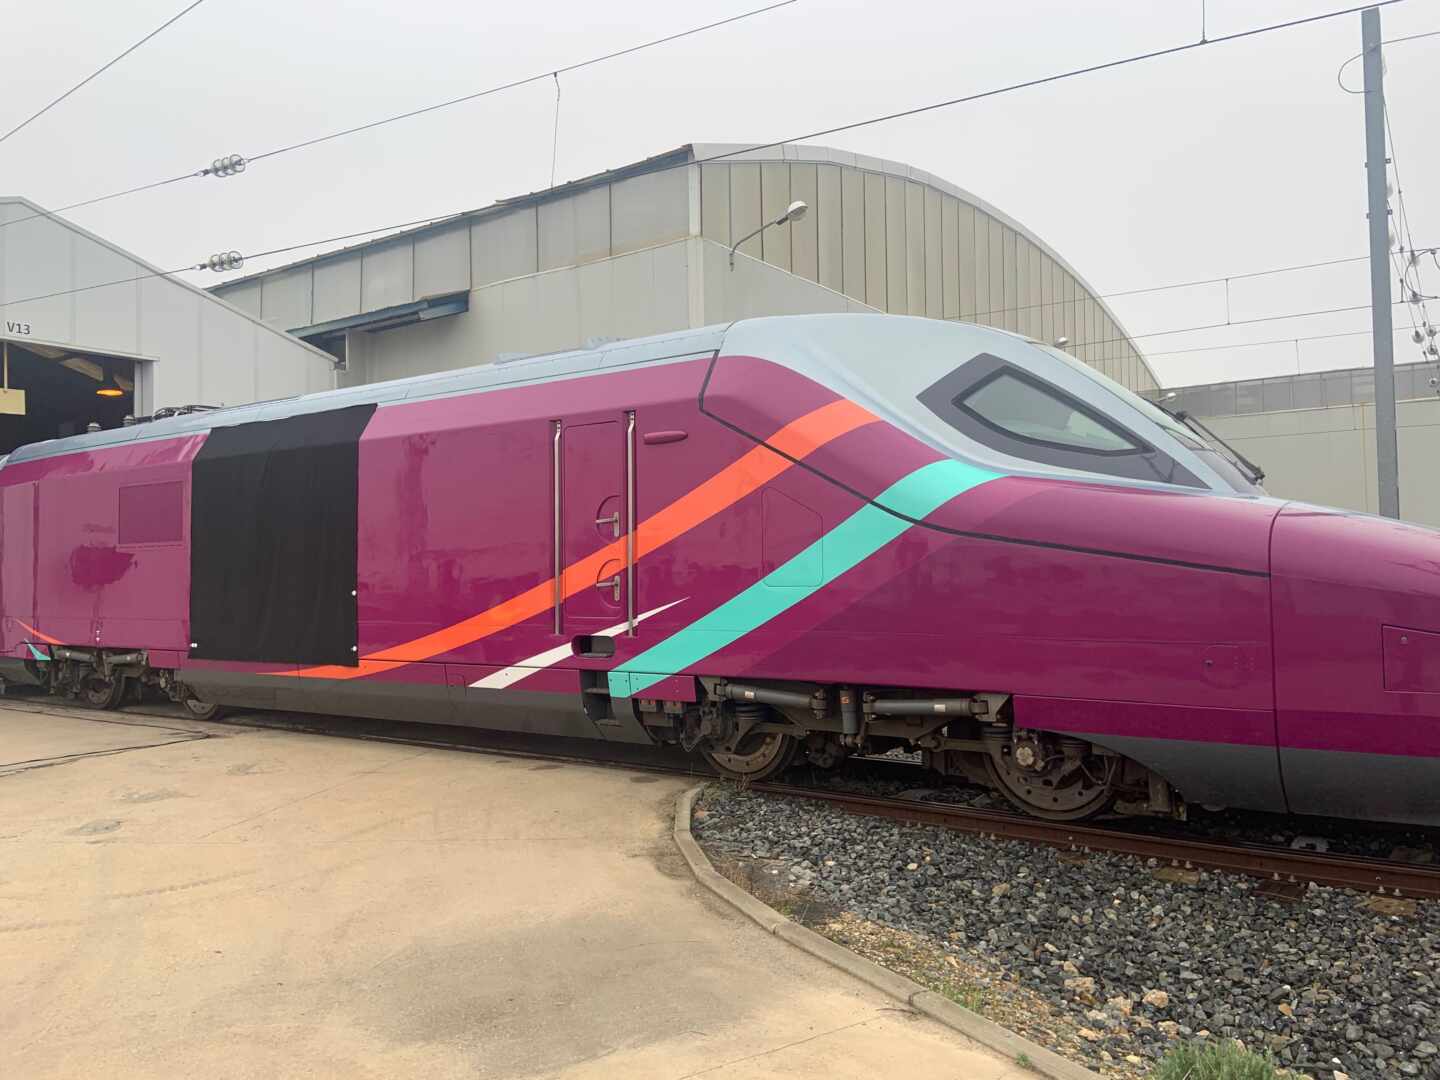 Imagen de un tren para el nuevo AVE de bajo coste de Renfe.